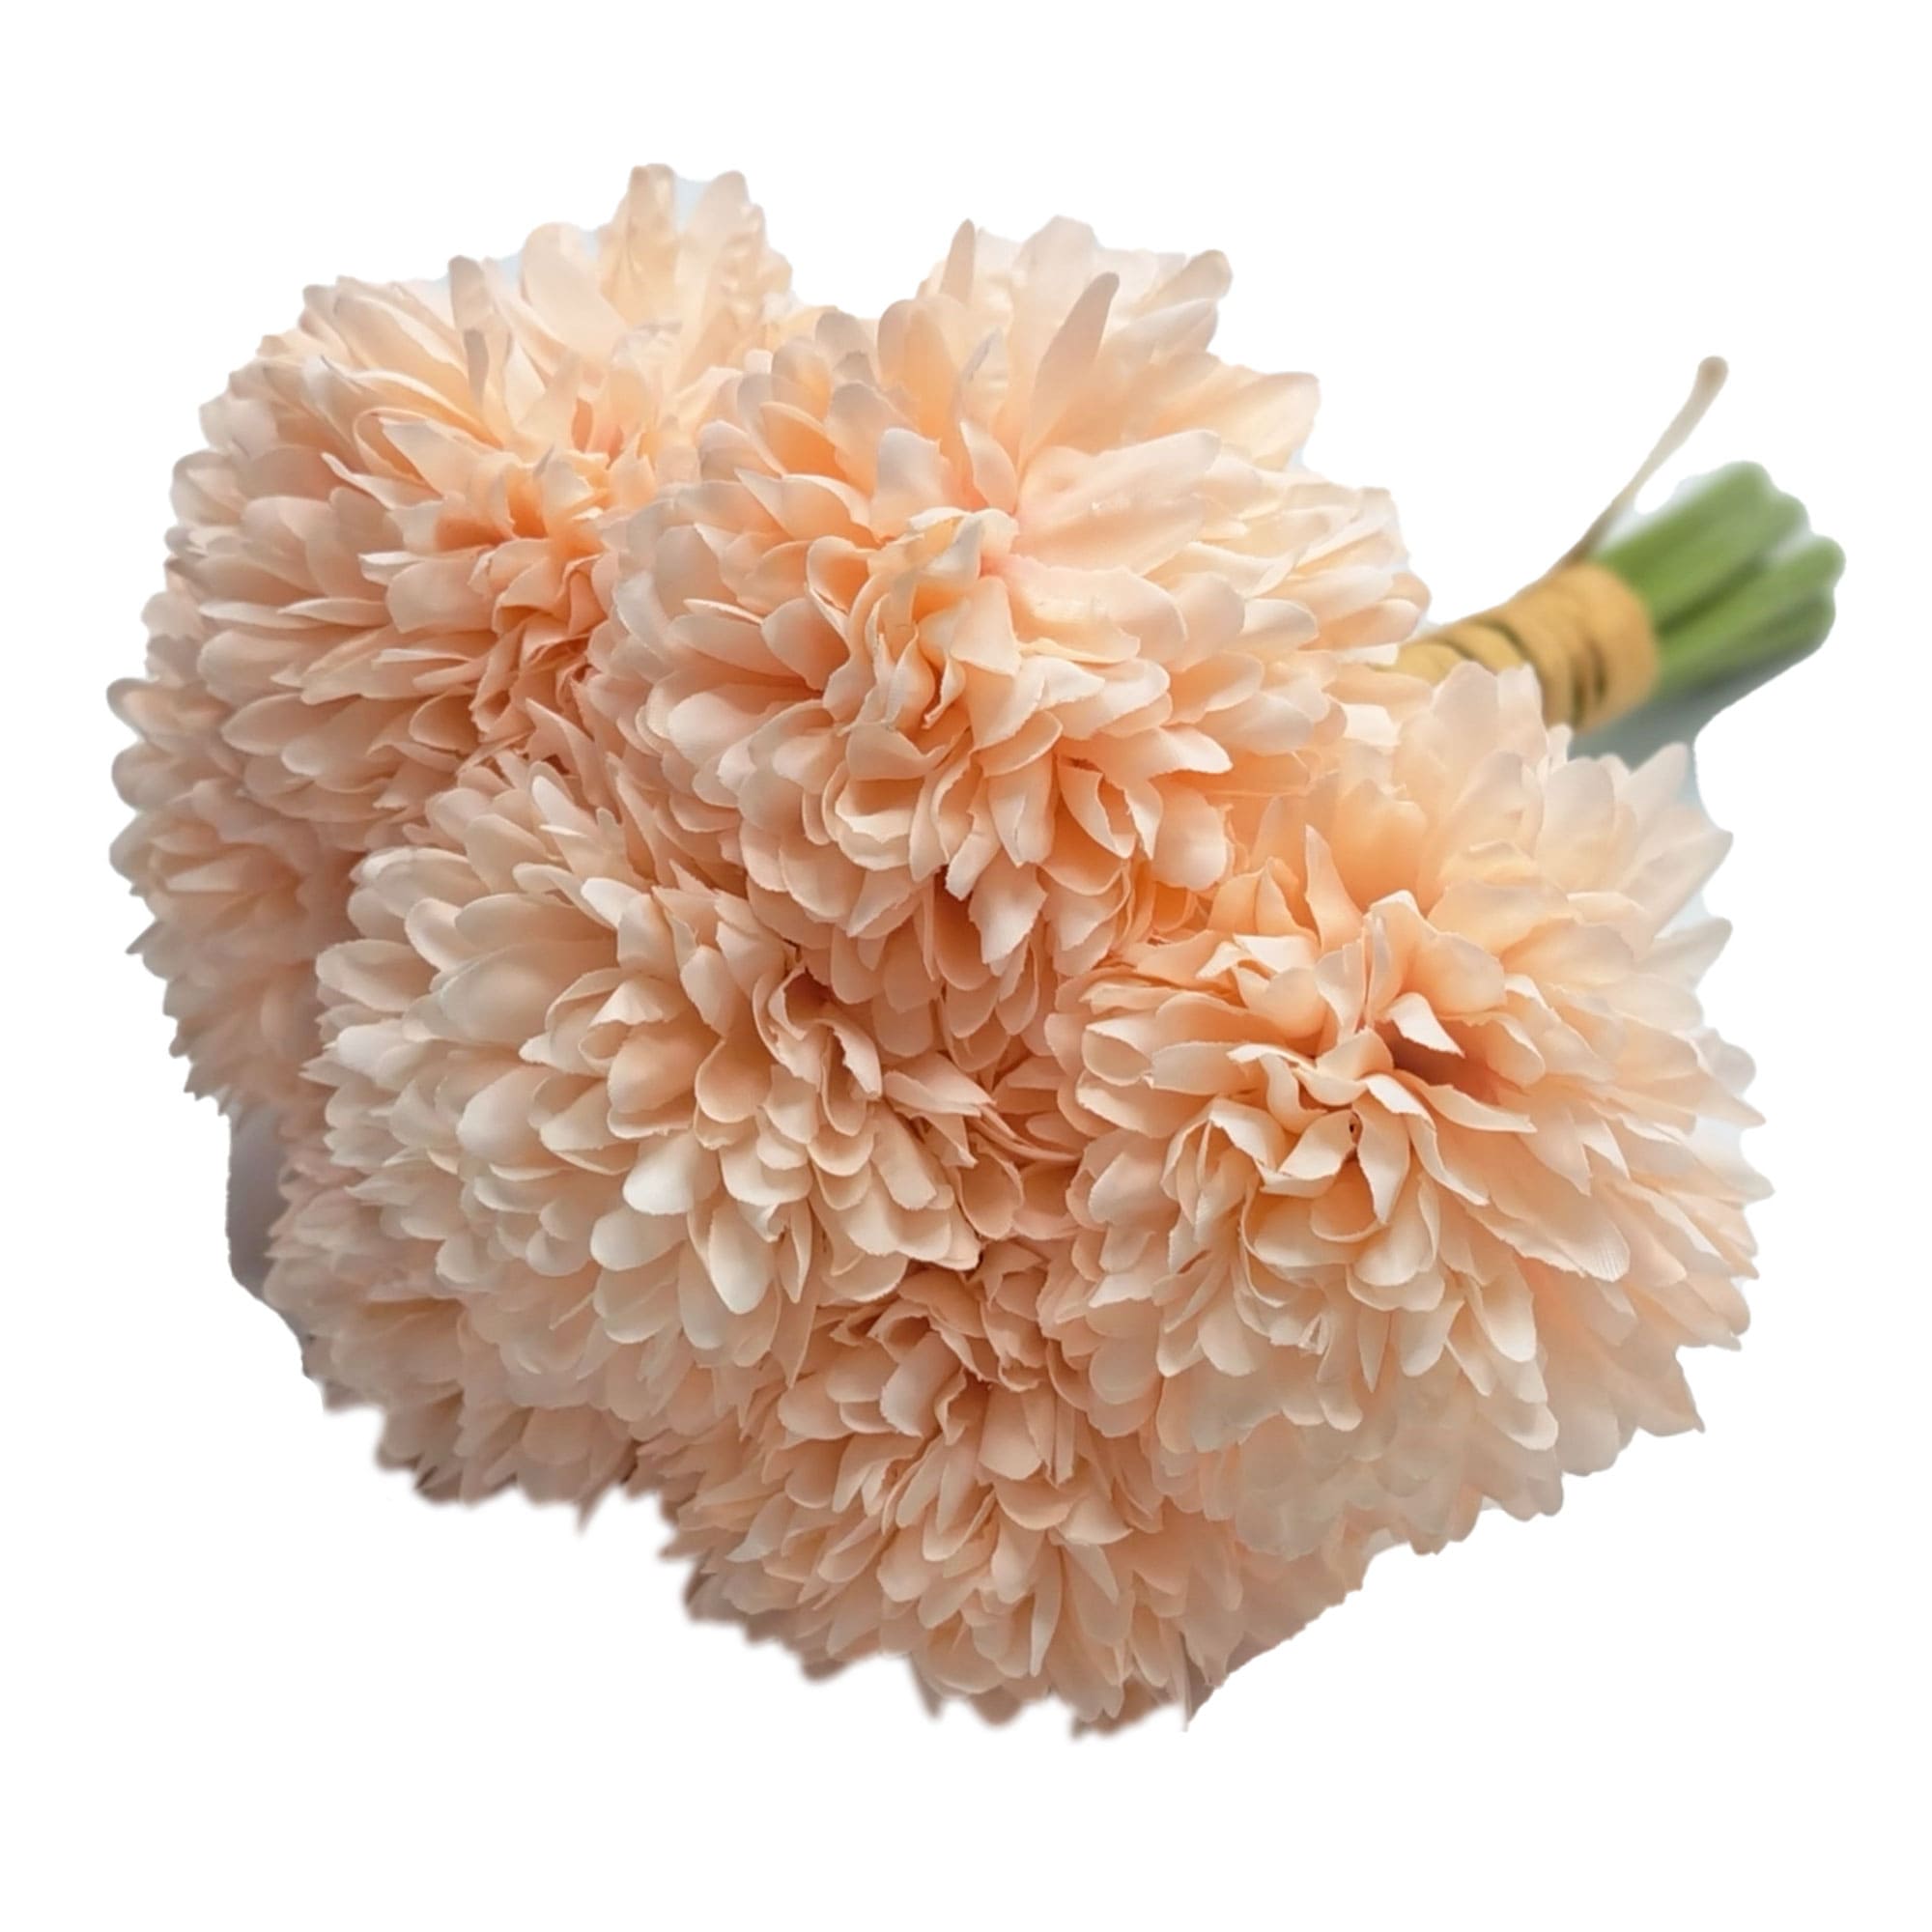 Kasımpatı Demeti-Uçuk Pembe  BisüsBiçicek  Yapay  Kuru Çiçek Mağazanız